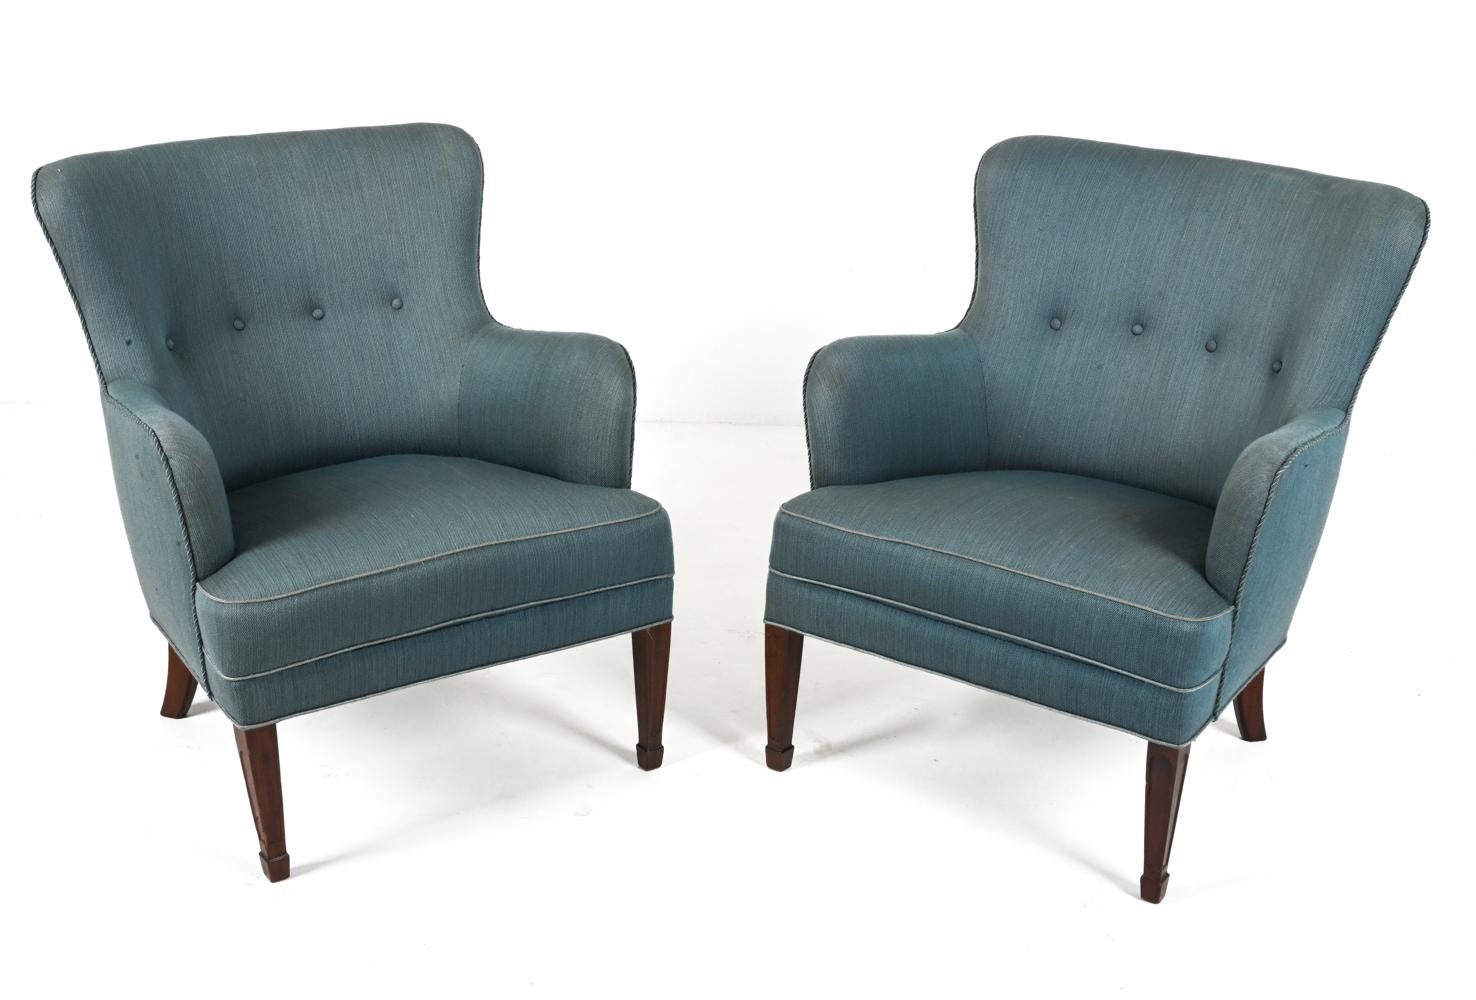 Voici une paire de fauteuils exquis produits par le célèbre Frits Henningsen dans les années 1940. Fabriqués avec sophistication et souci du détail, ces fauteuils incarnent l'essence même de l'élégance moderne danoise. 

Les pieds en acajou massif